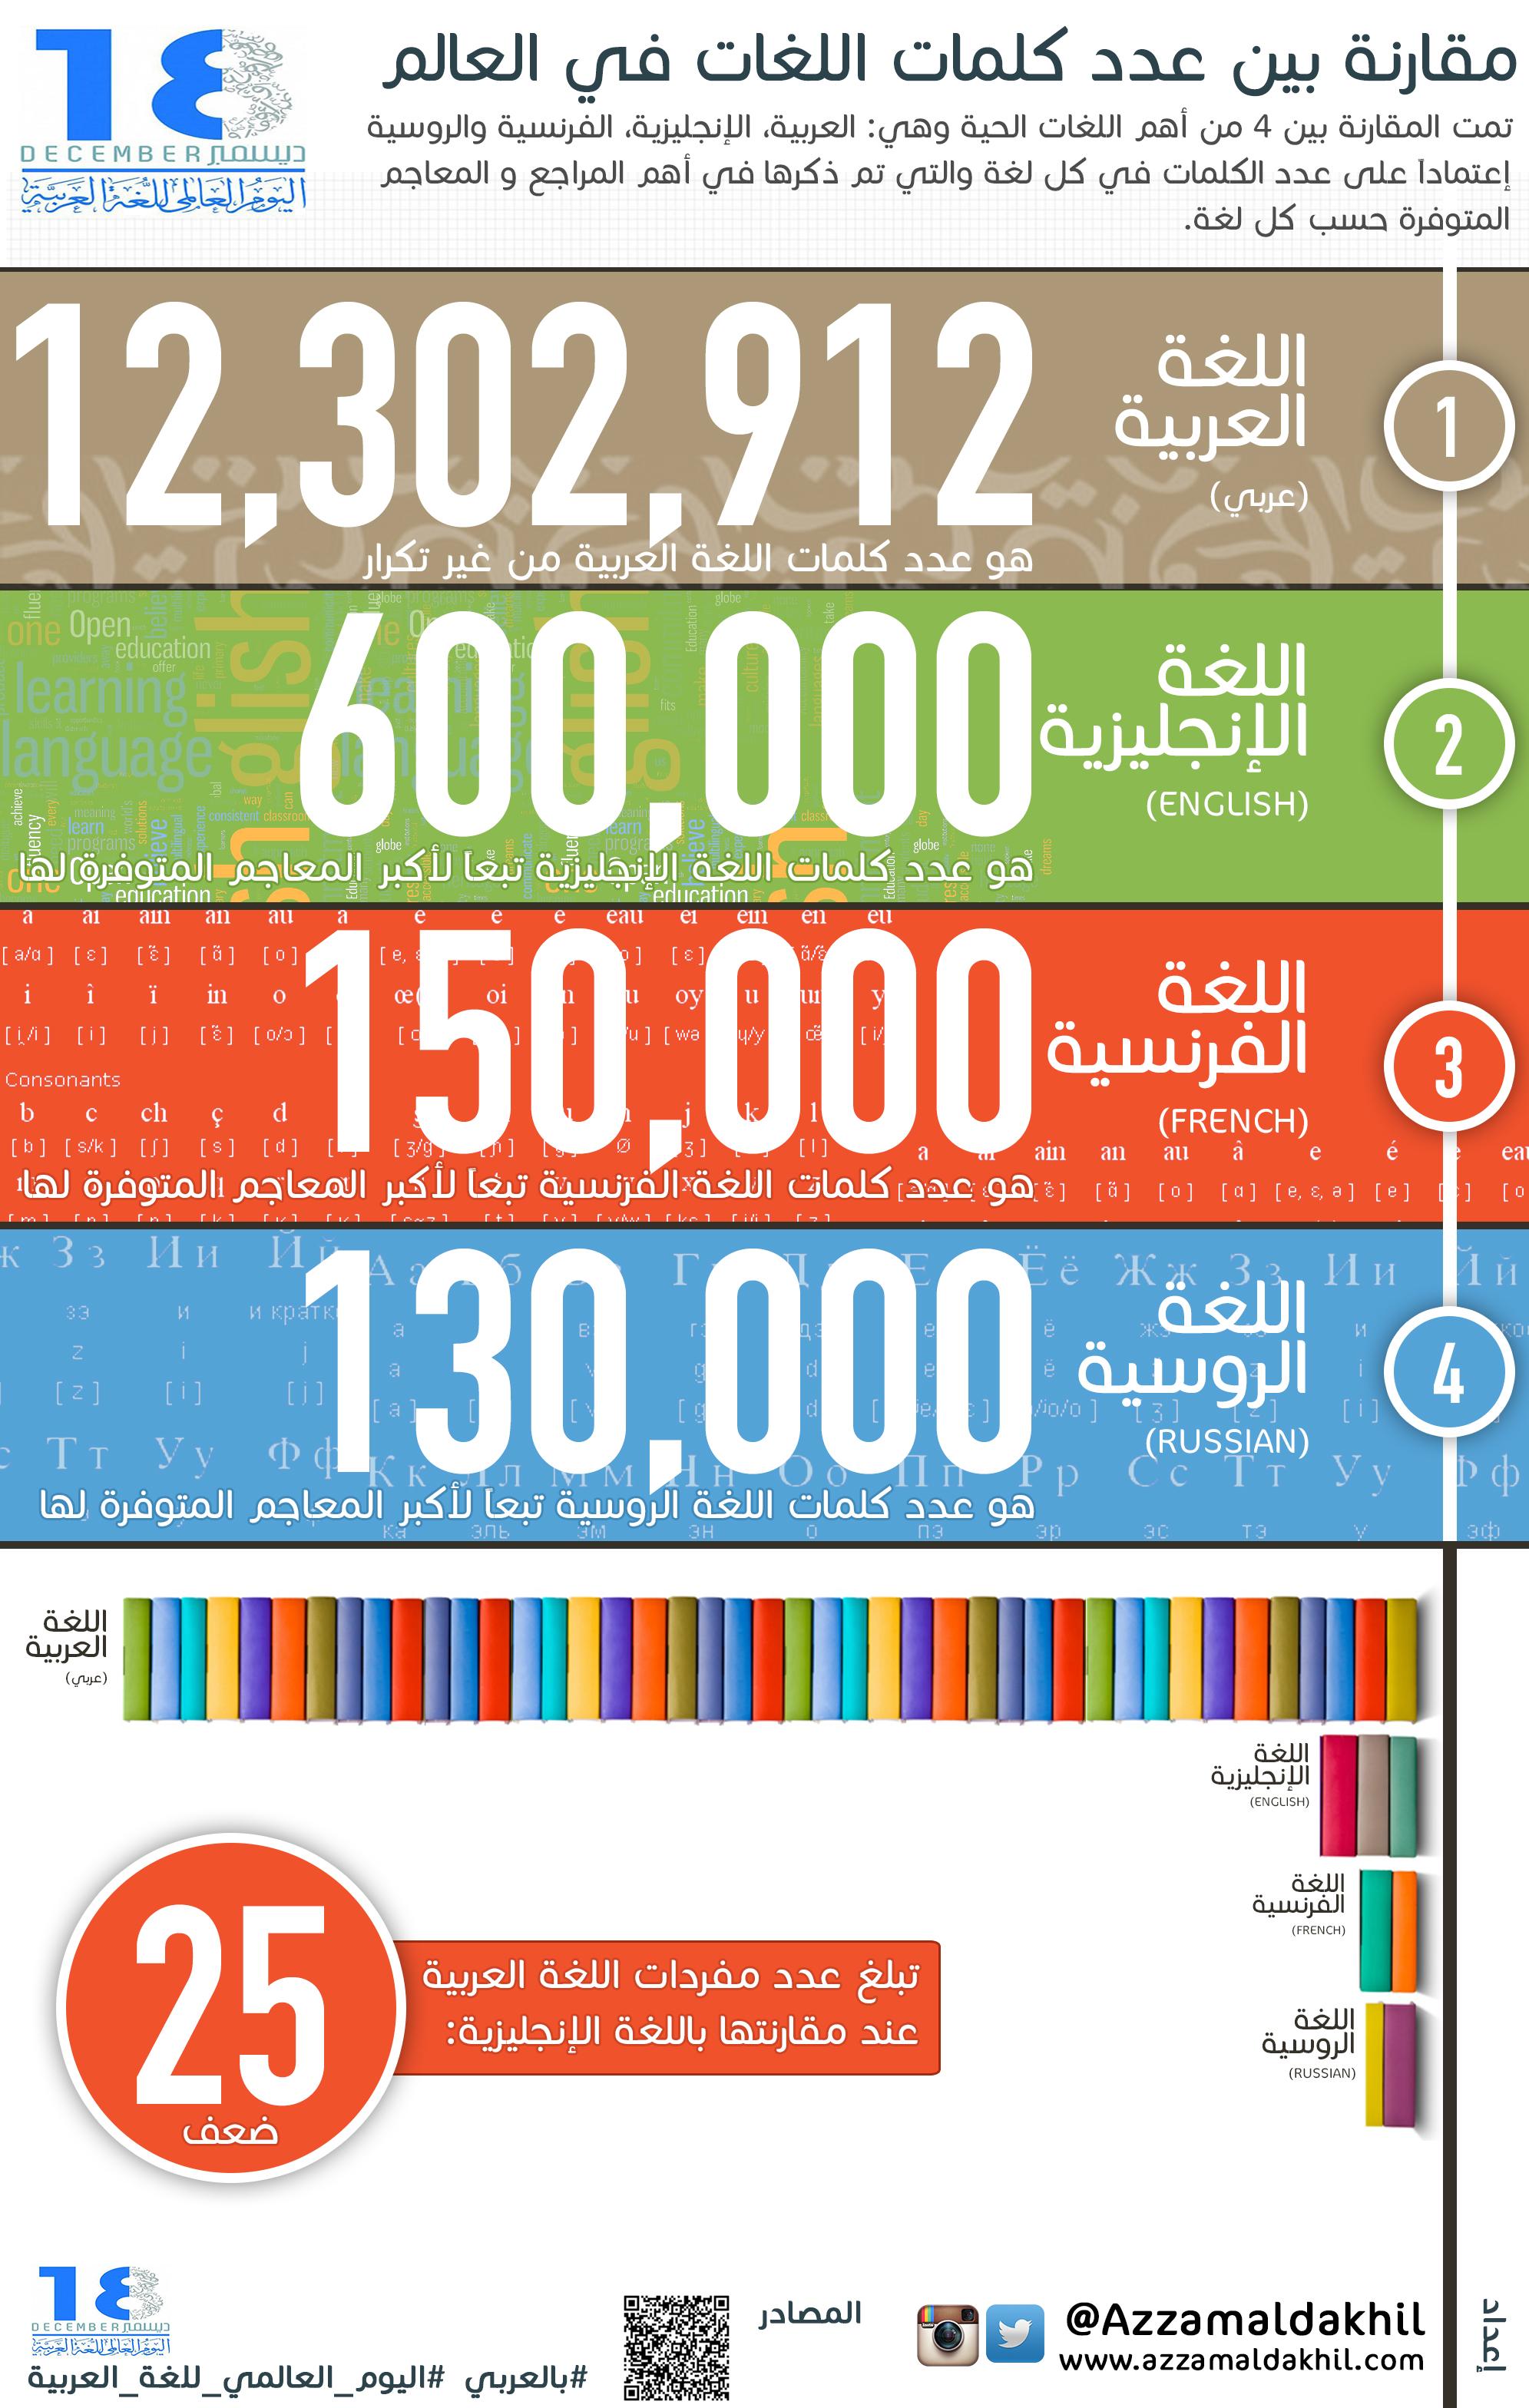 مقارنة-بين-عدد-كلمات-اللغات-في-العالم